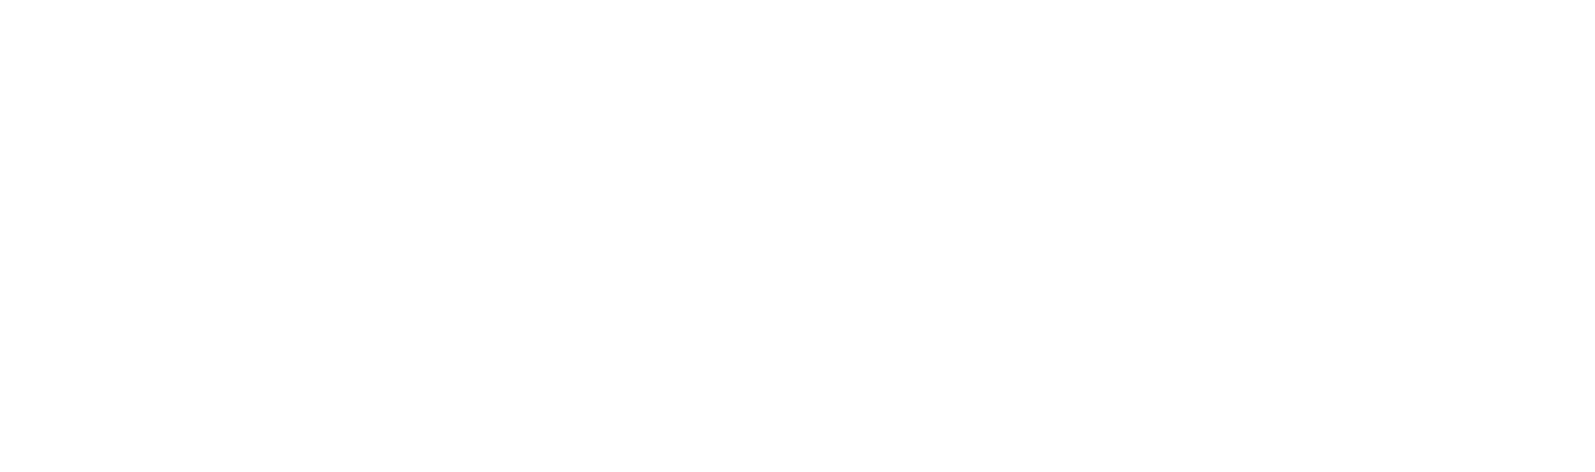 W. R. Berkley logo grand pour les fonds sombres (PNG transparent)